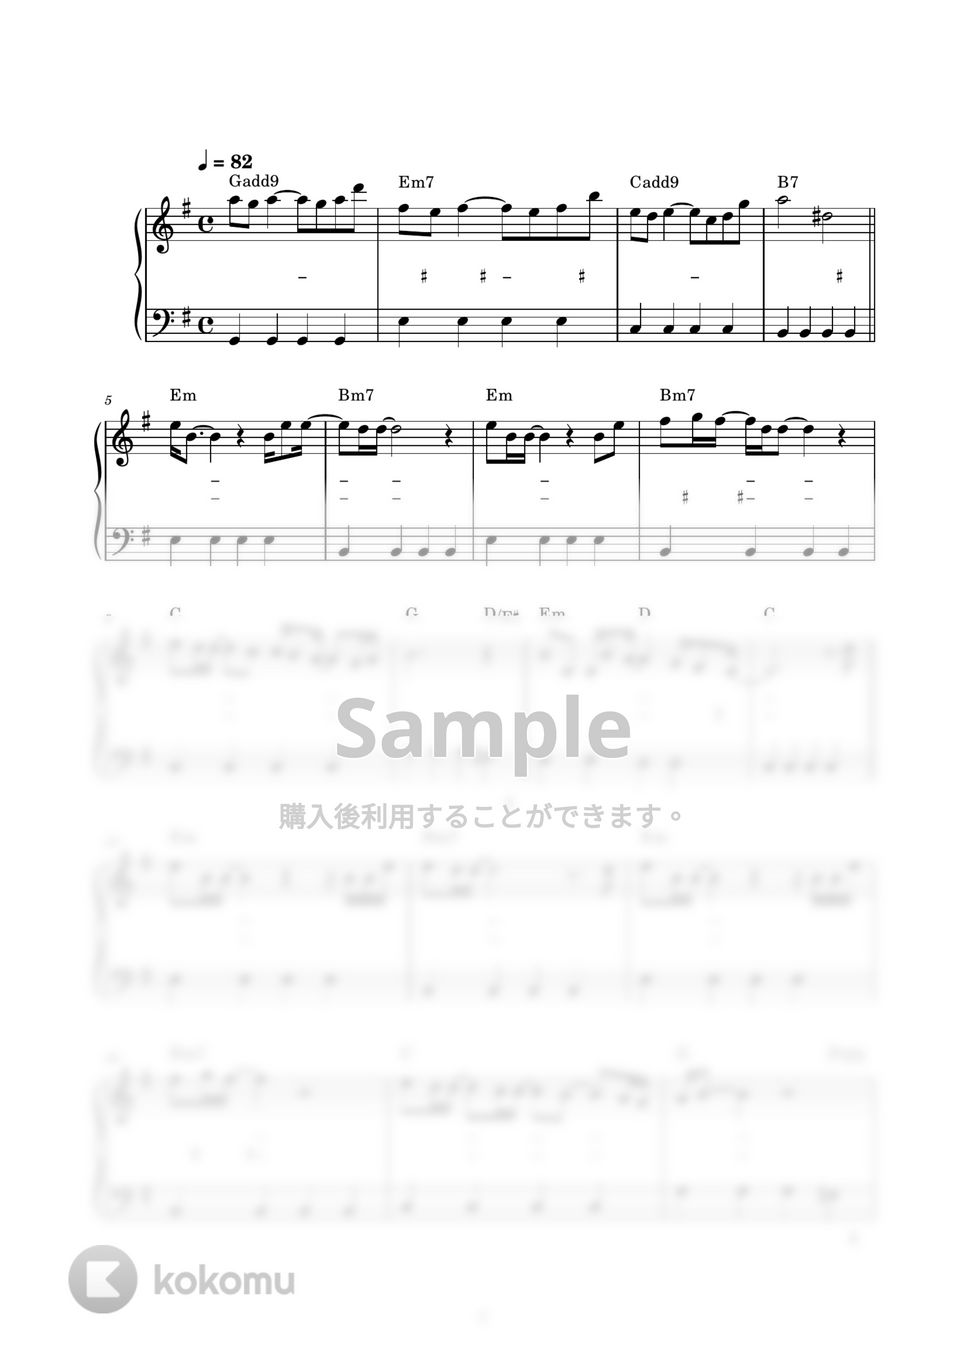 オフコース - さよなら (ピアノ楽譜 / かんたん両手 / 歌詞付き / ドレミ付き / 初心者向き) by piano.tokyo